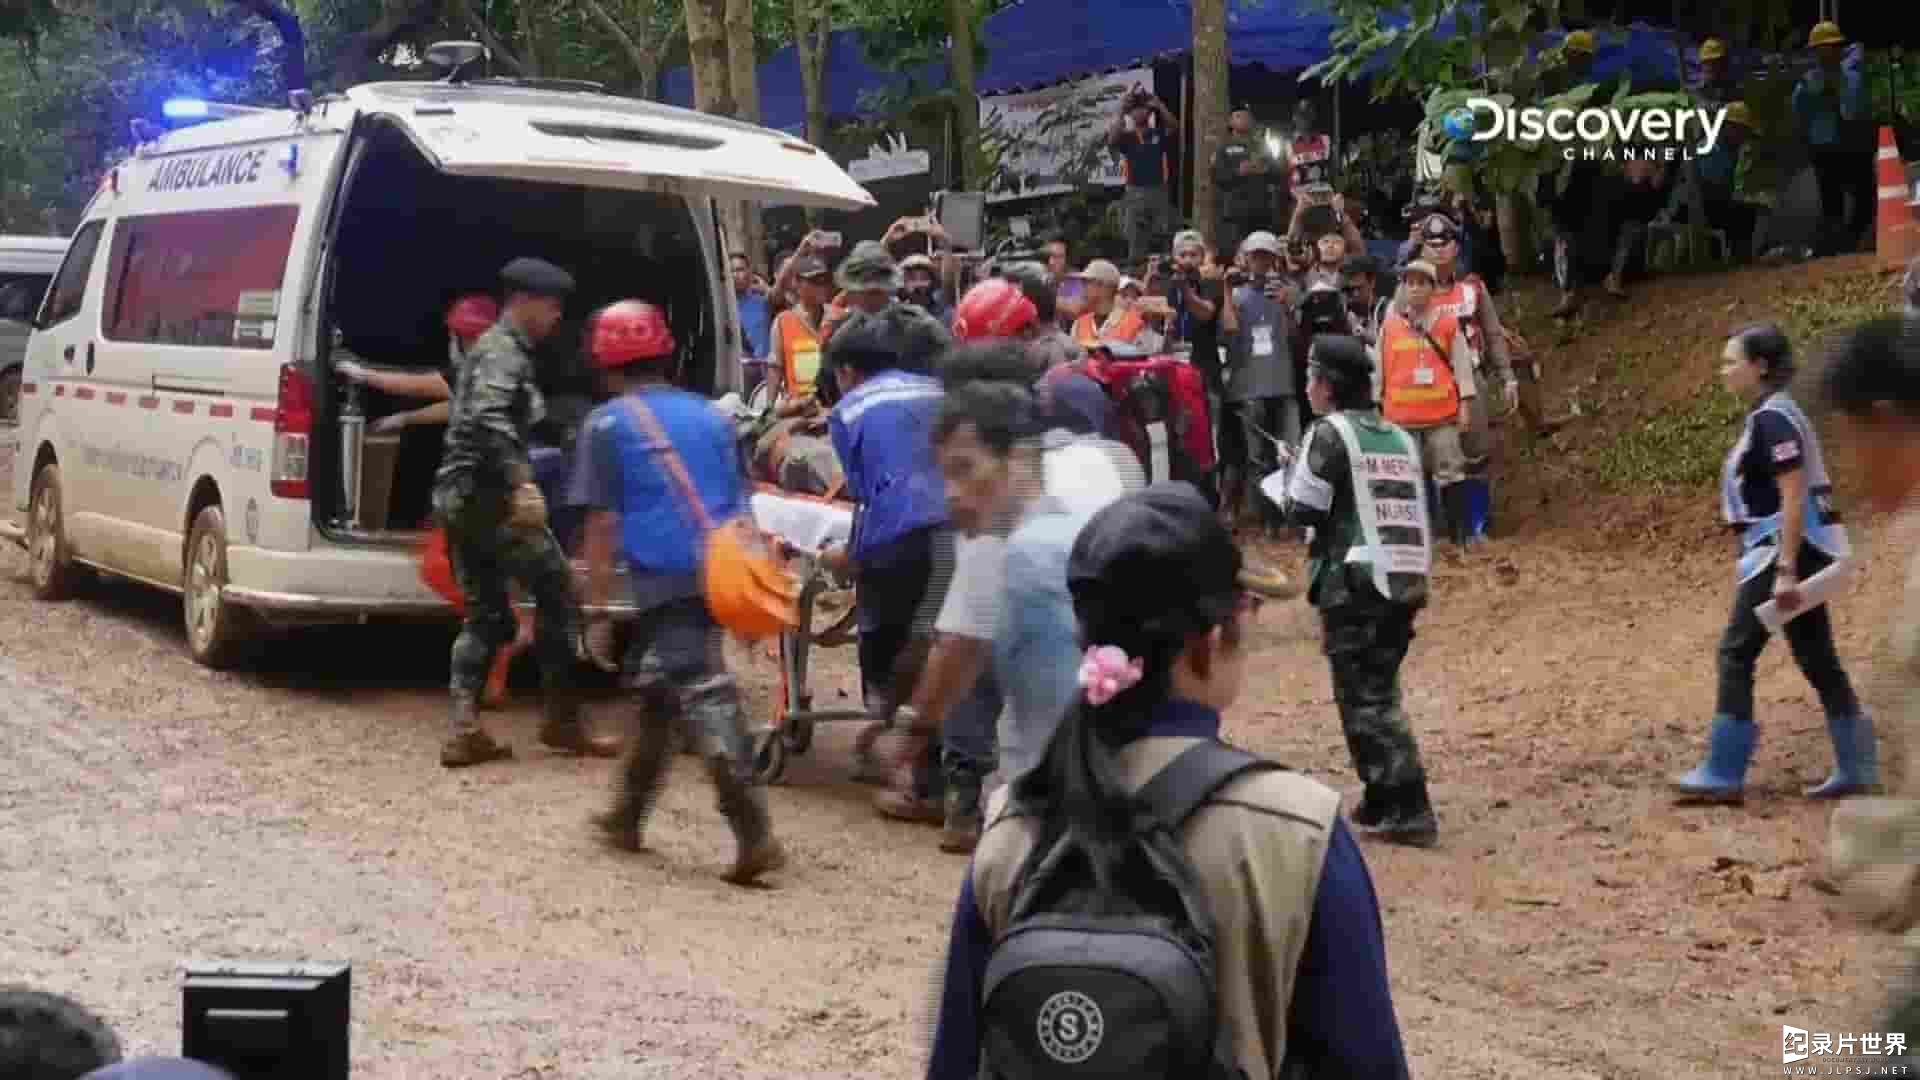 探索频道《抢救泰国足球少年 Operation Thai Cave Rescue 2018》全1集